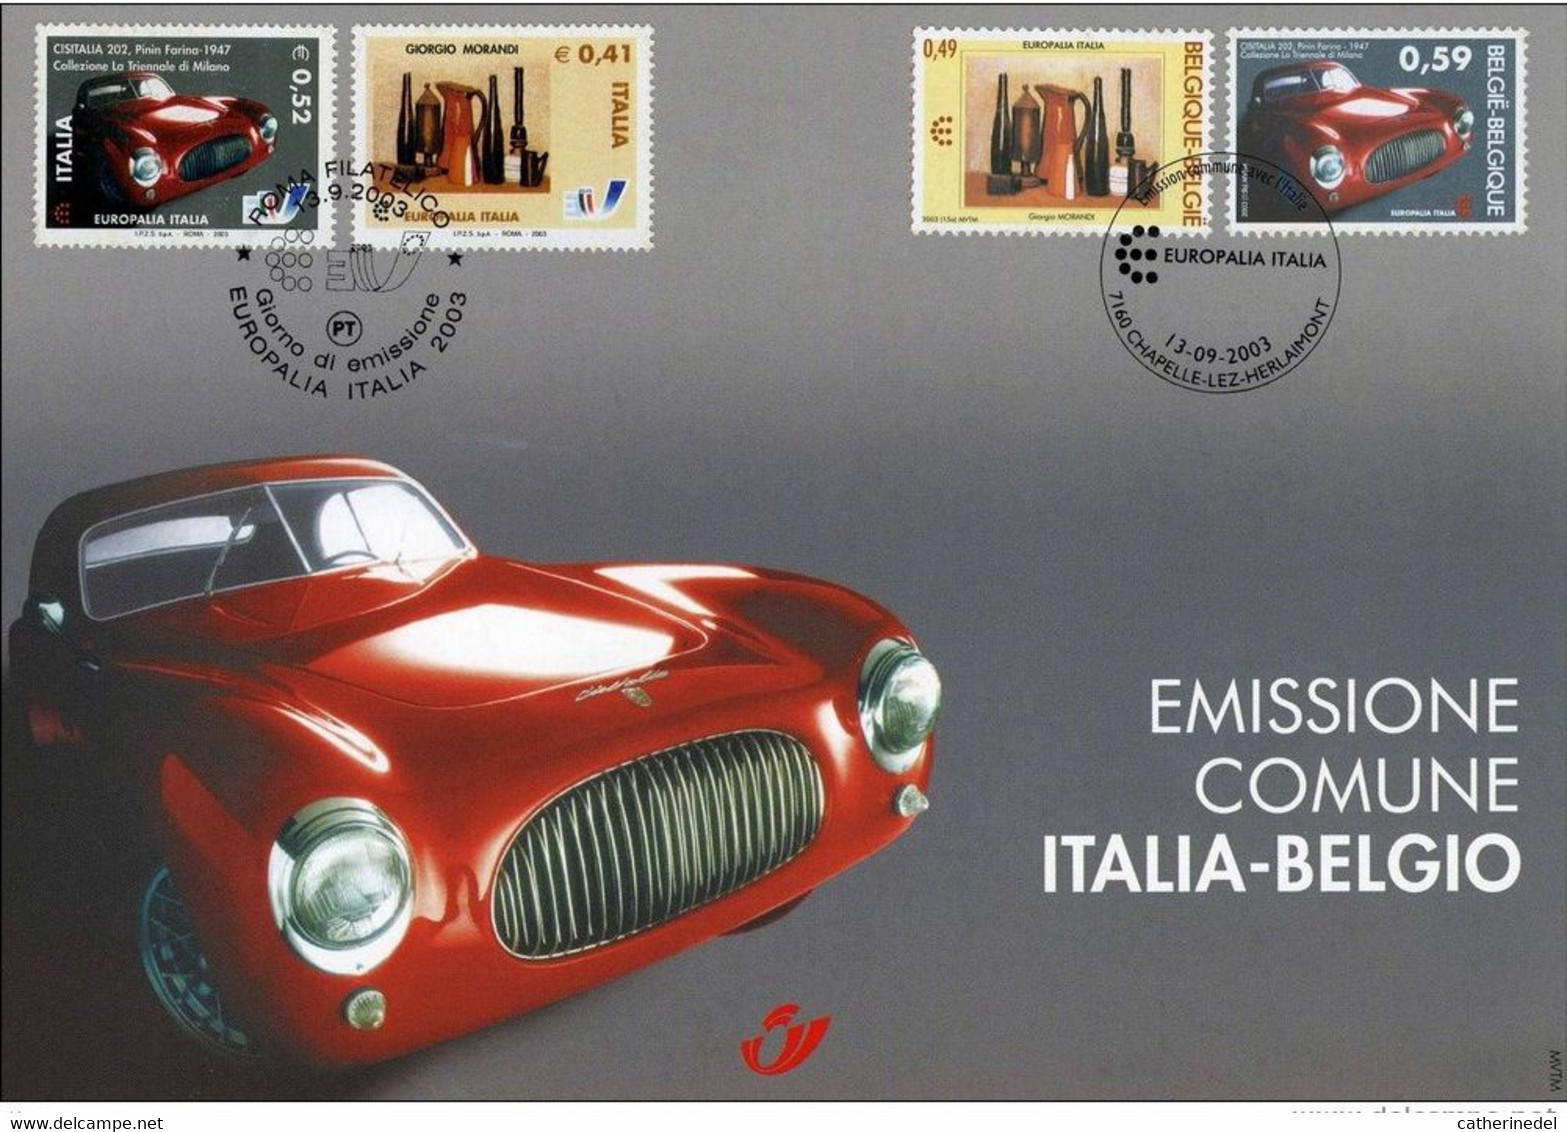 Année 2003 : Carte Souvenir 3205HK - Europalia Italie - Souvenir Cards - Joint Issues [HK]